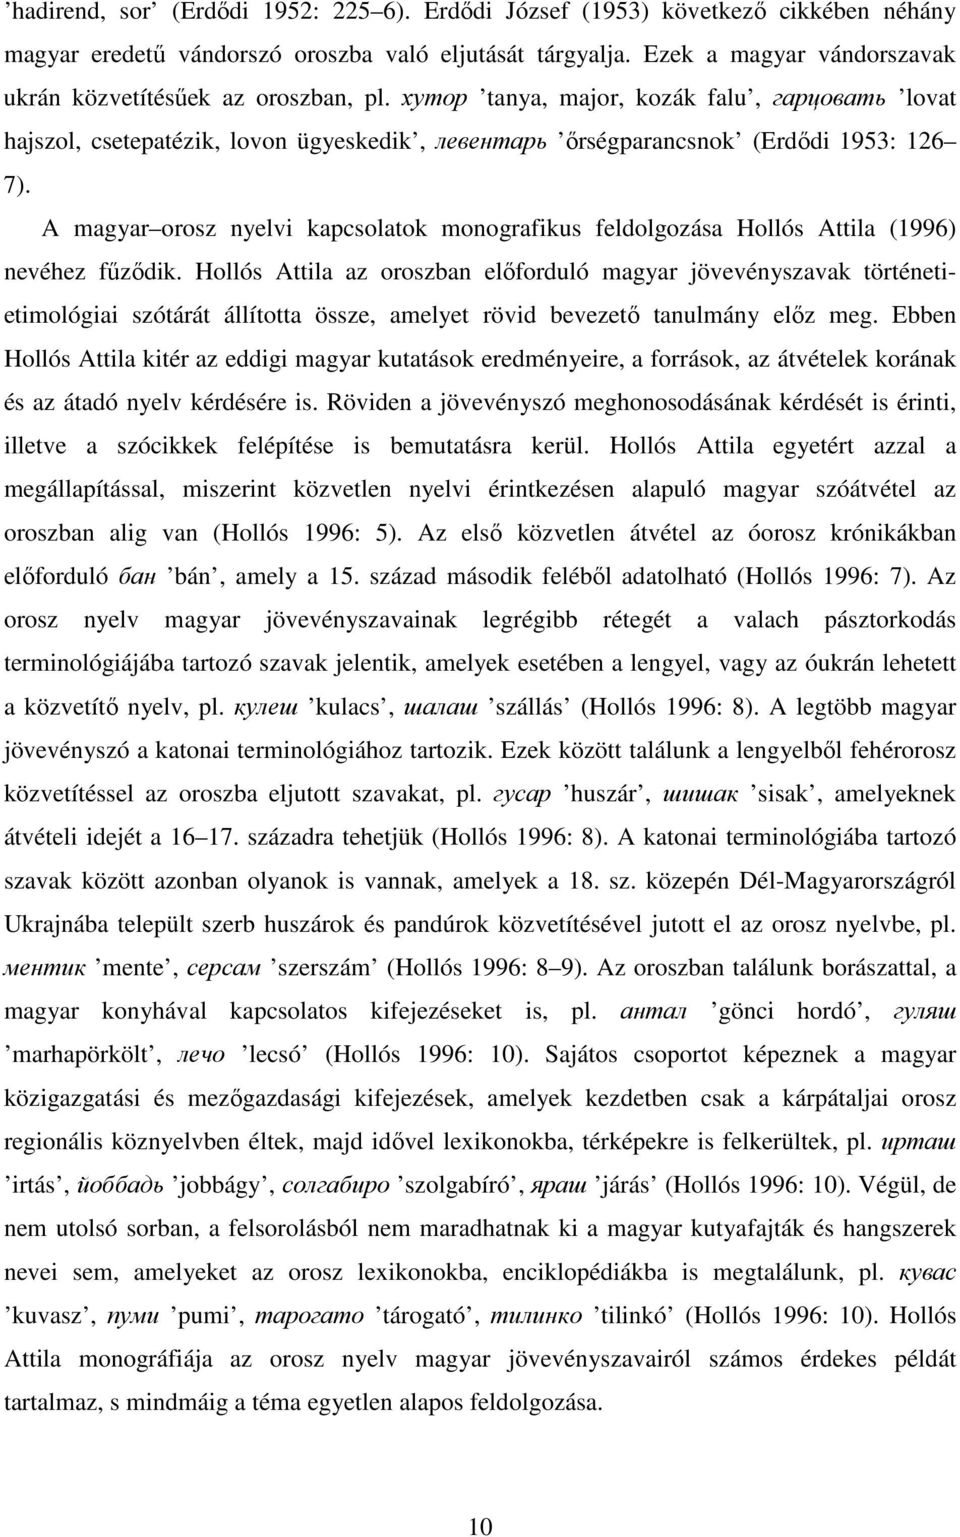 A magyar orosz nyelvi kapcsolatok monografikus feldolgozása Hollós Attila (1996) nevéhez fűződik.